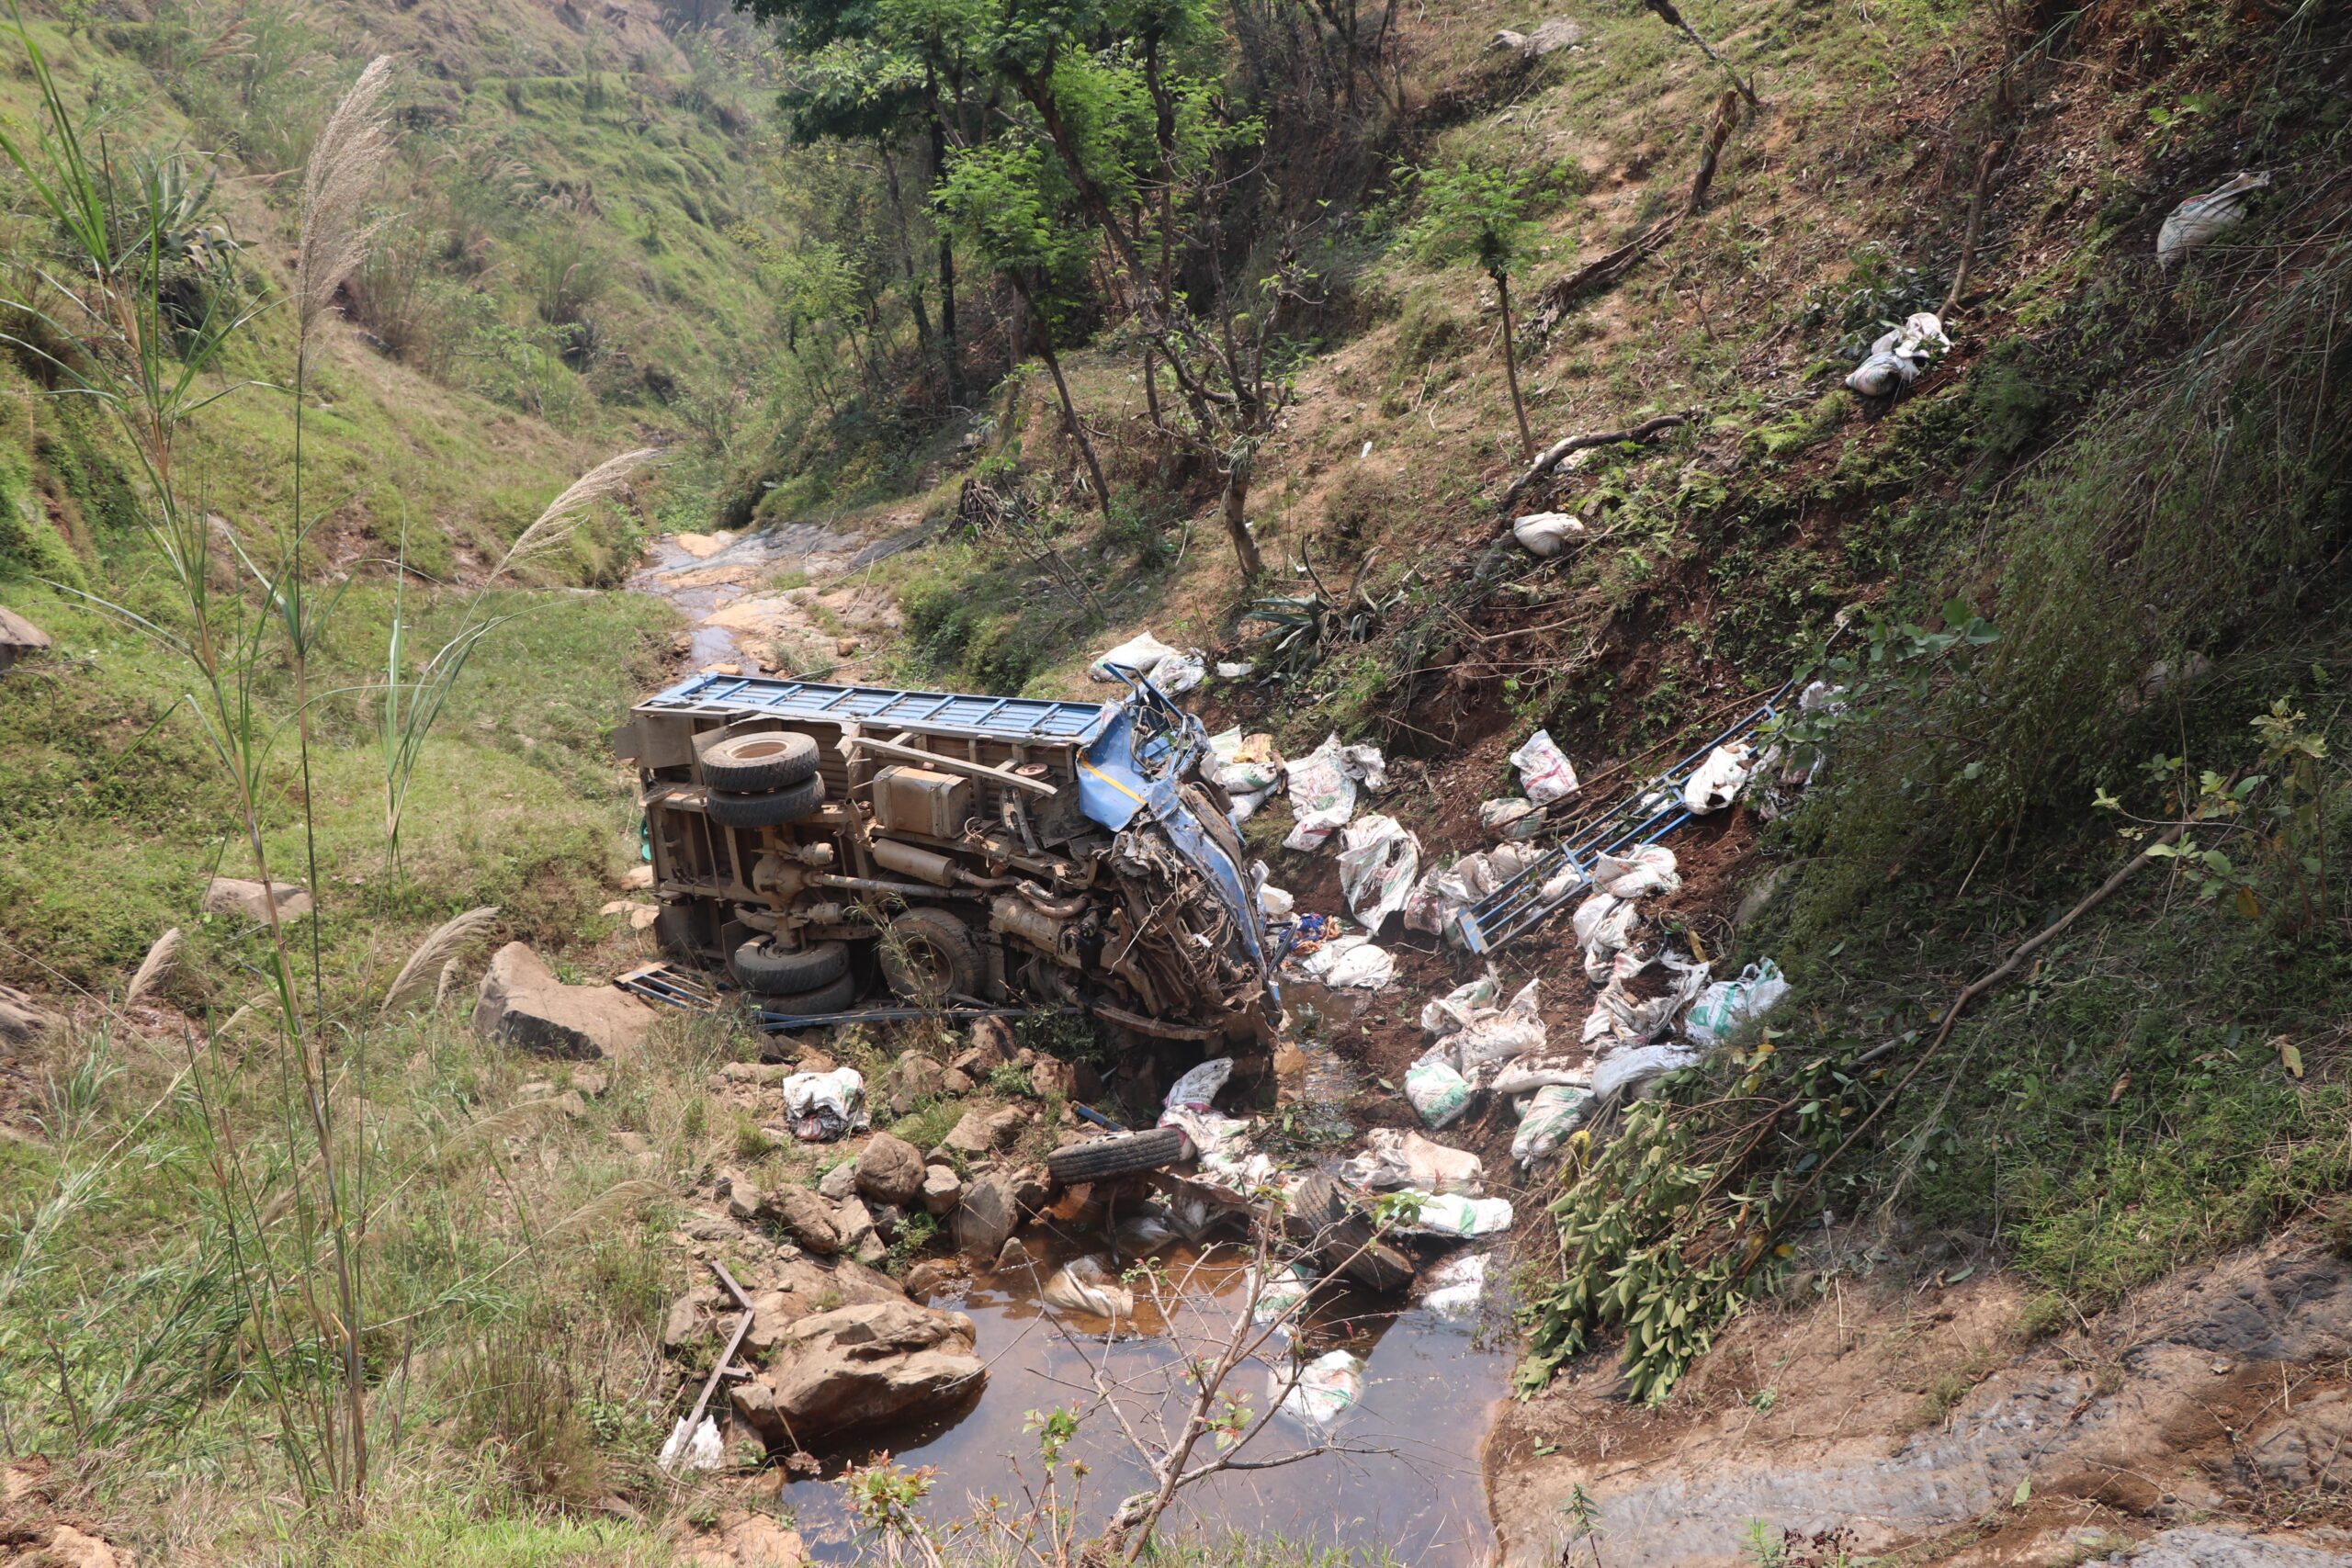 ट्रक दुर्घटना अपडेटः बाबु छोराको मृत्य, आमा र दुई छोरासहित सात जना घाइते